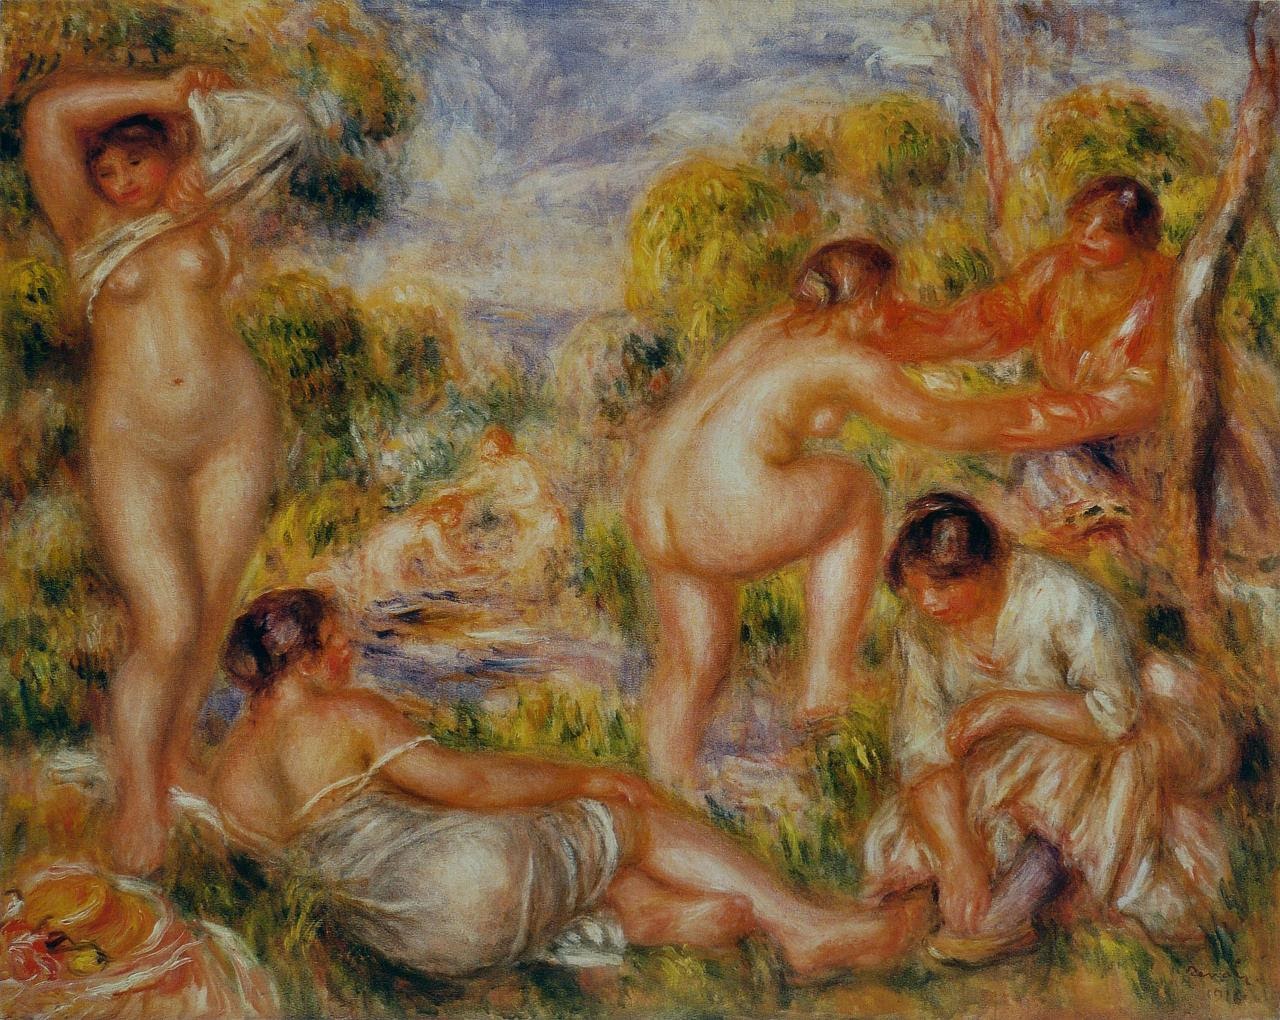 Pierre+Auguste+Renoir-1841-1-19 (744).jpg